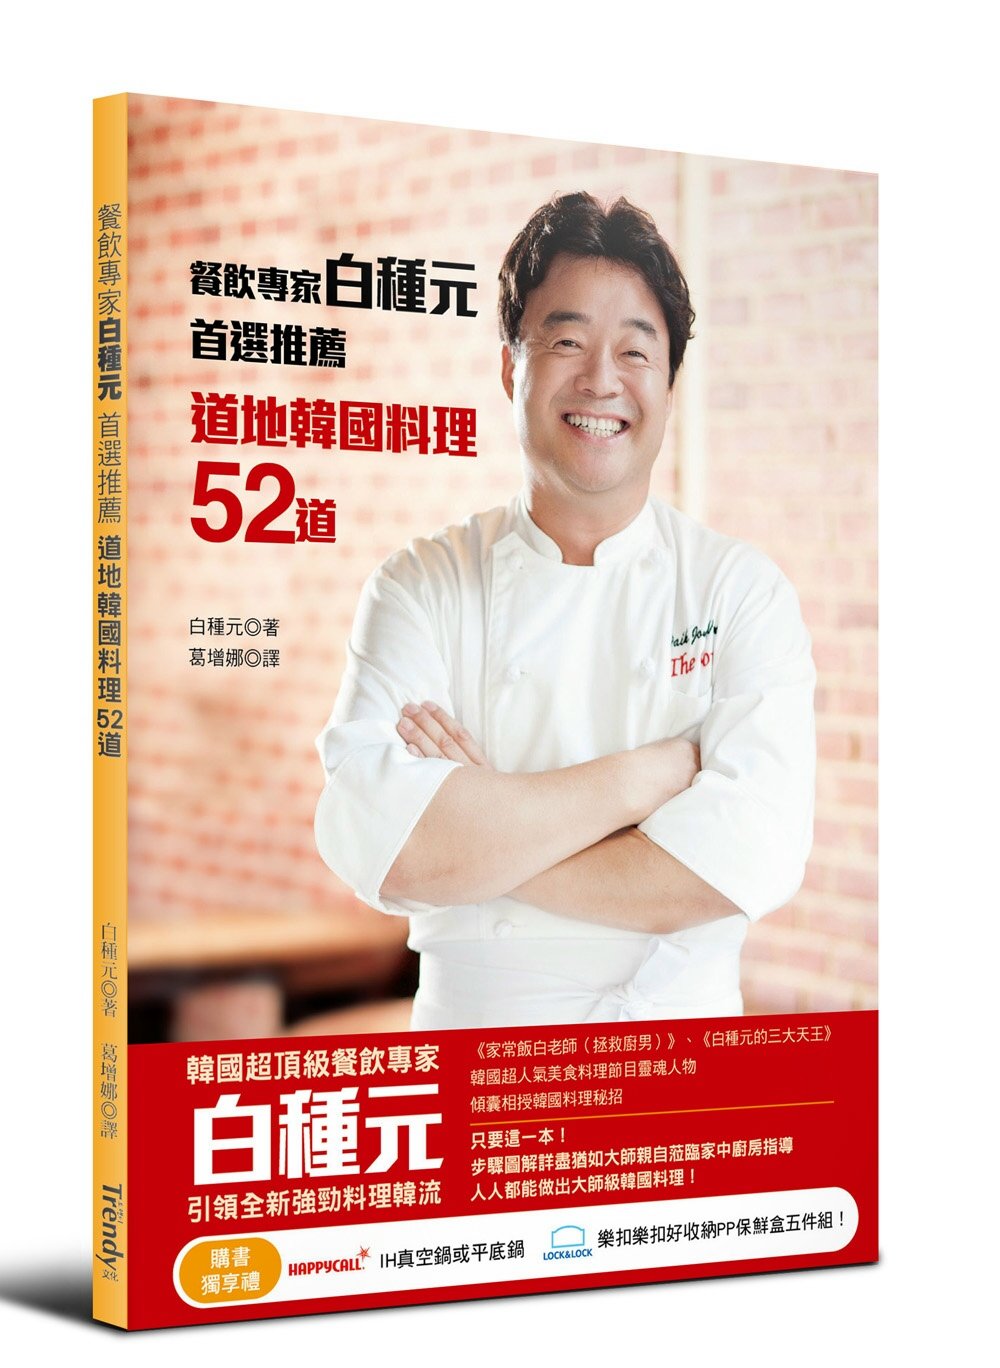 餐飲專家白種元首選推薦道地韓國料理52道